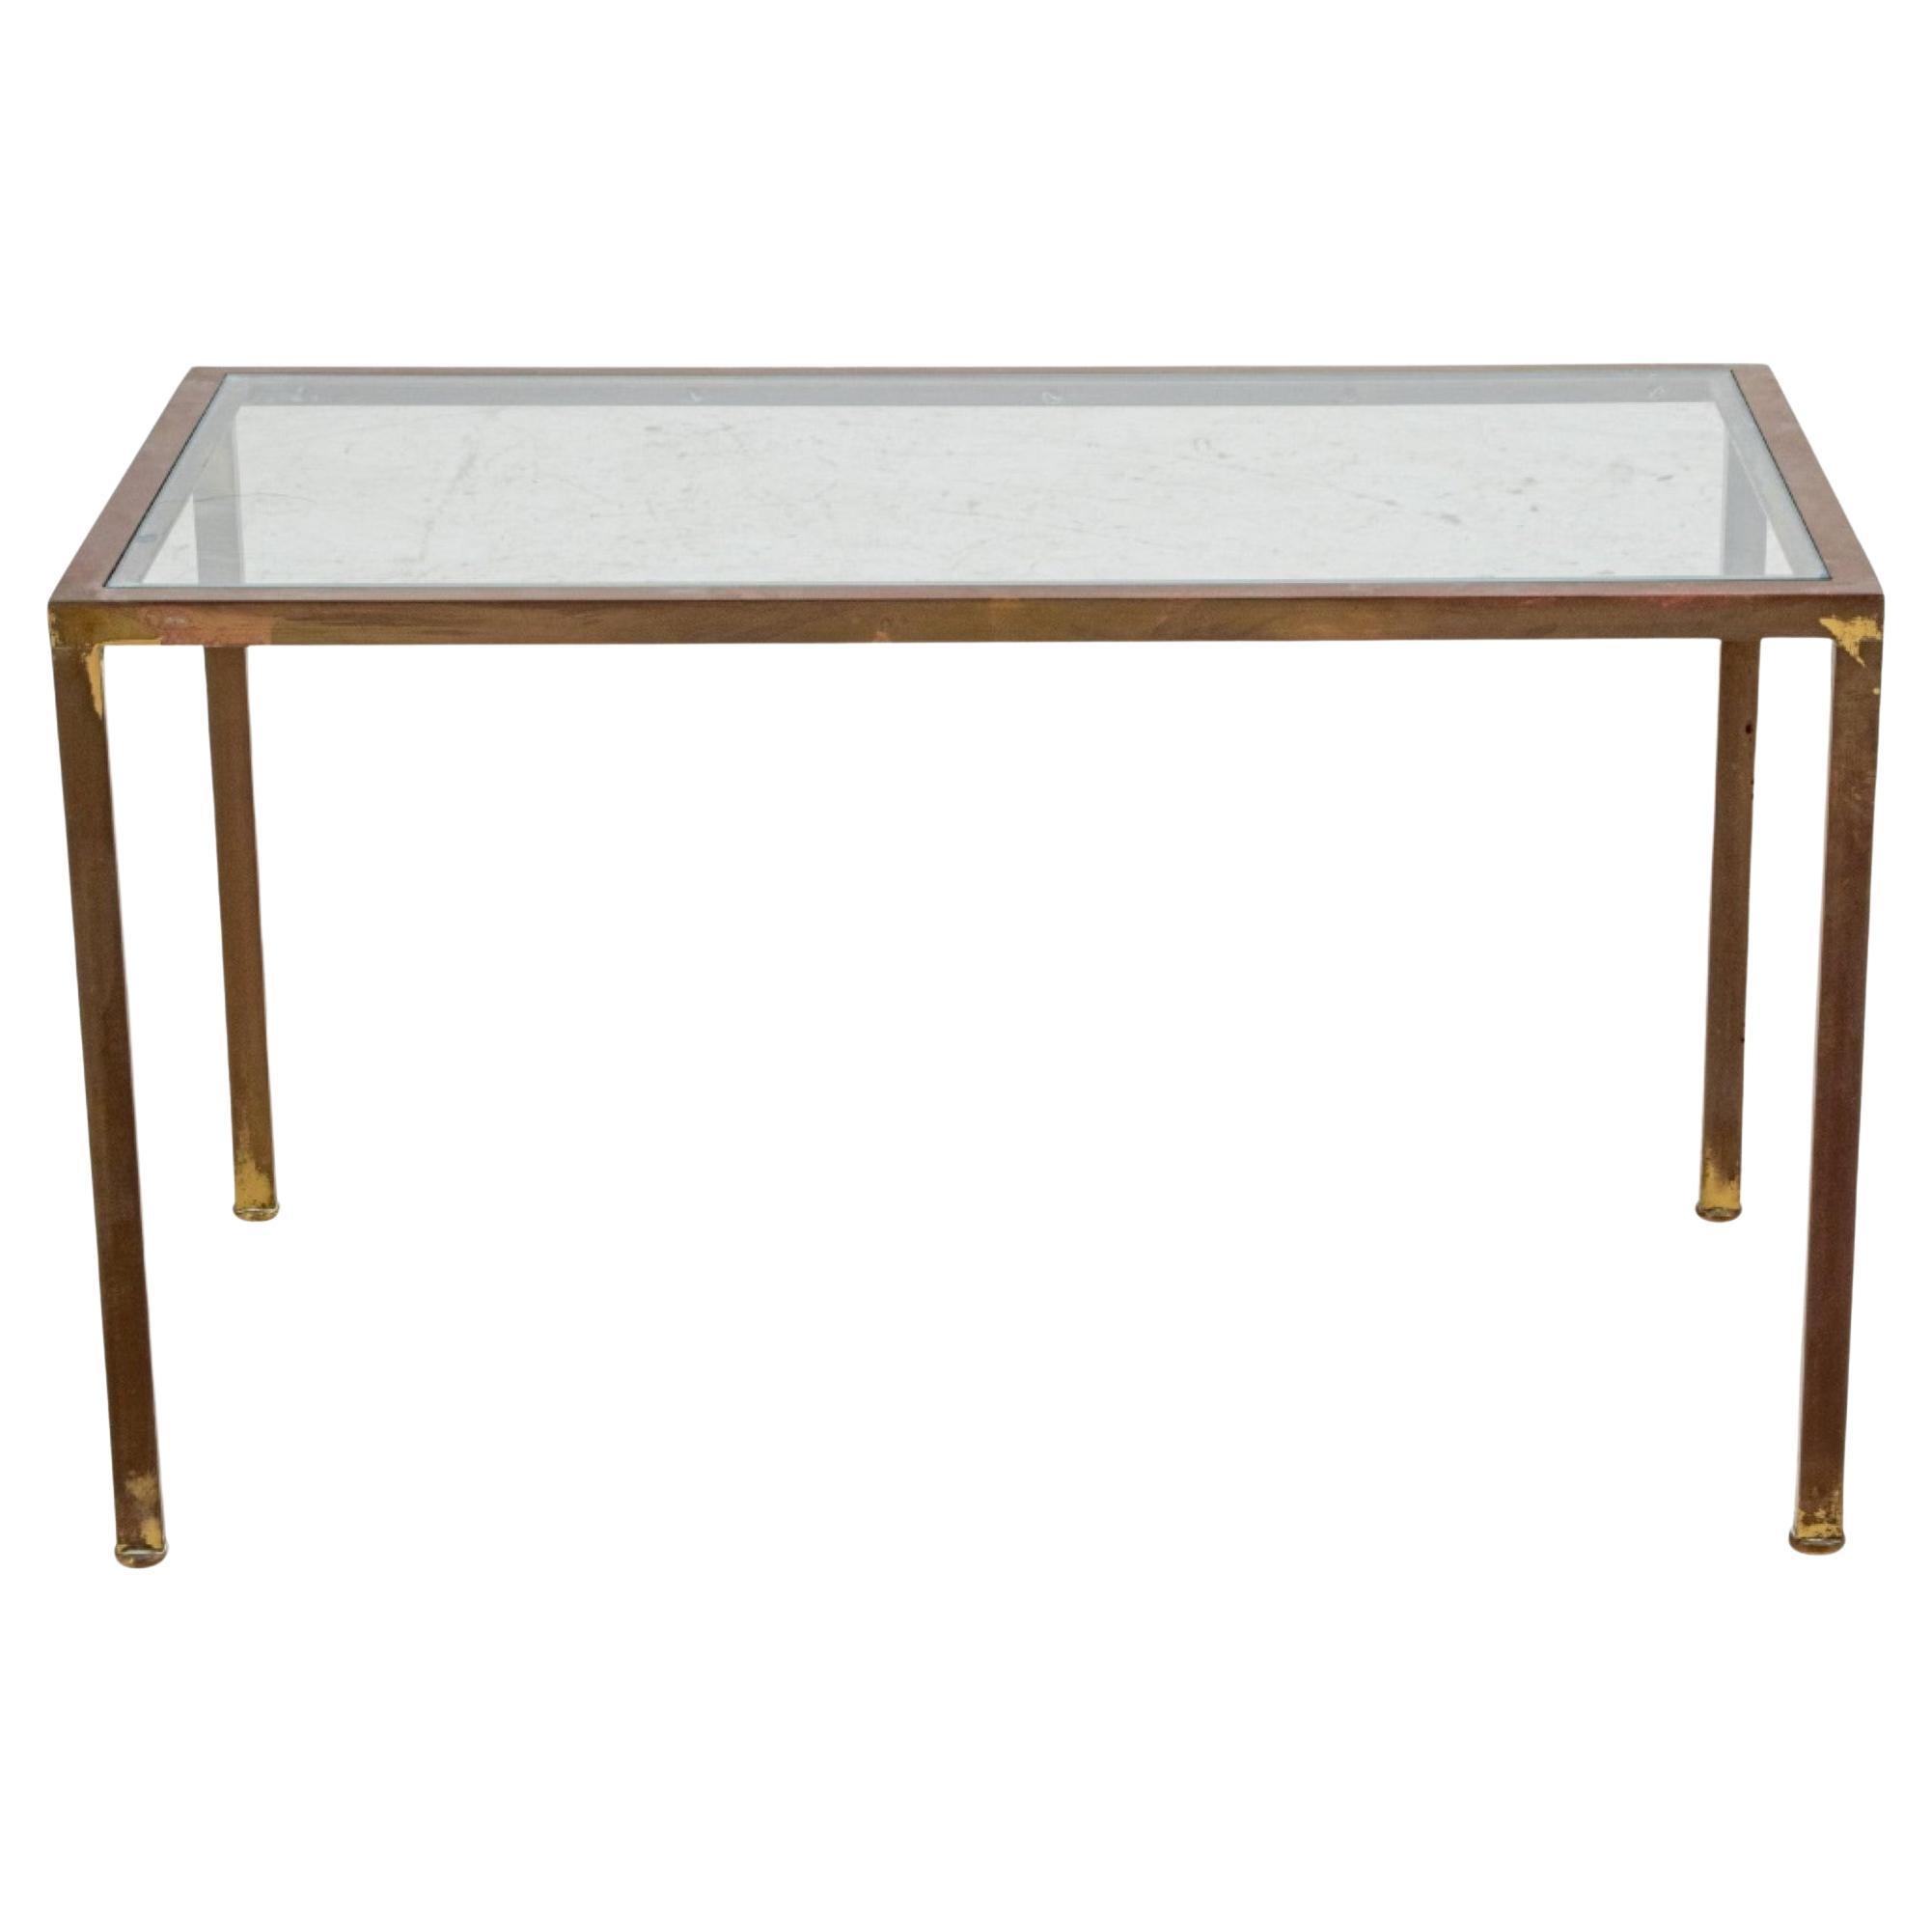 Post-Modern Gilt Metal And Glass Coffee Table